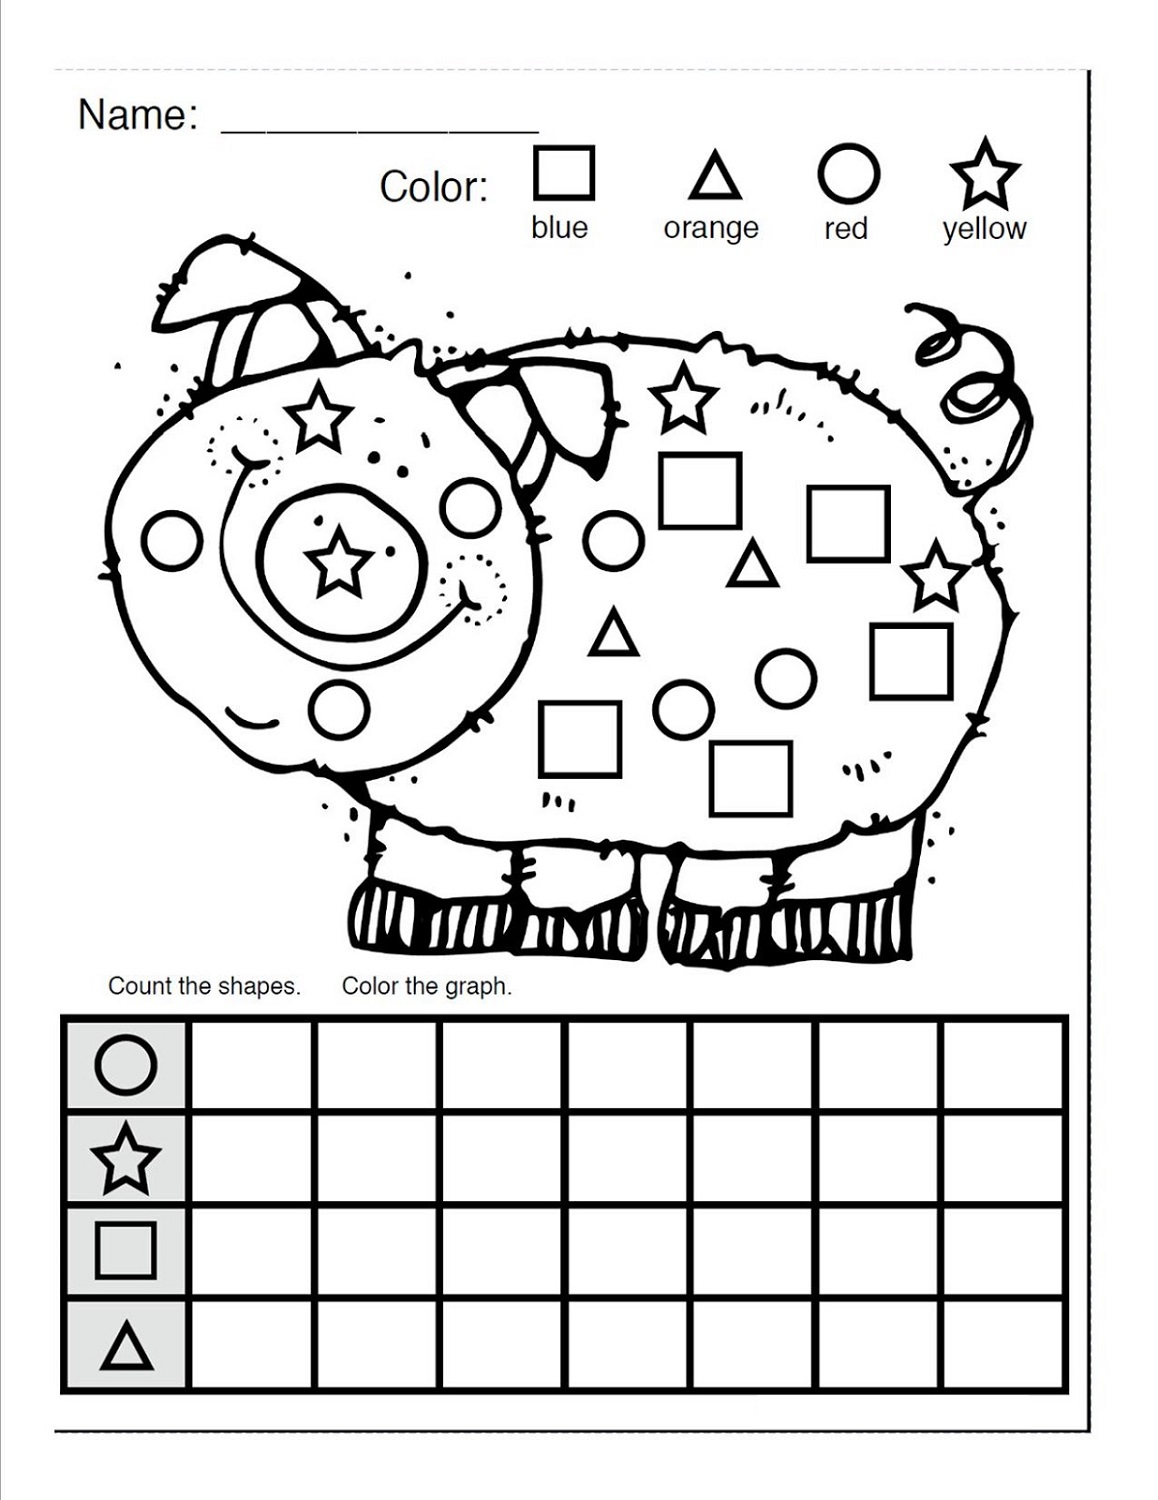 shapes-worksheets-for-kids-piggy